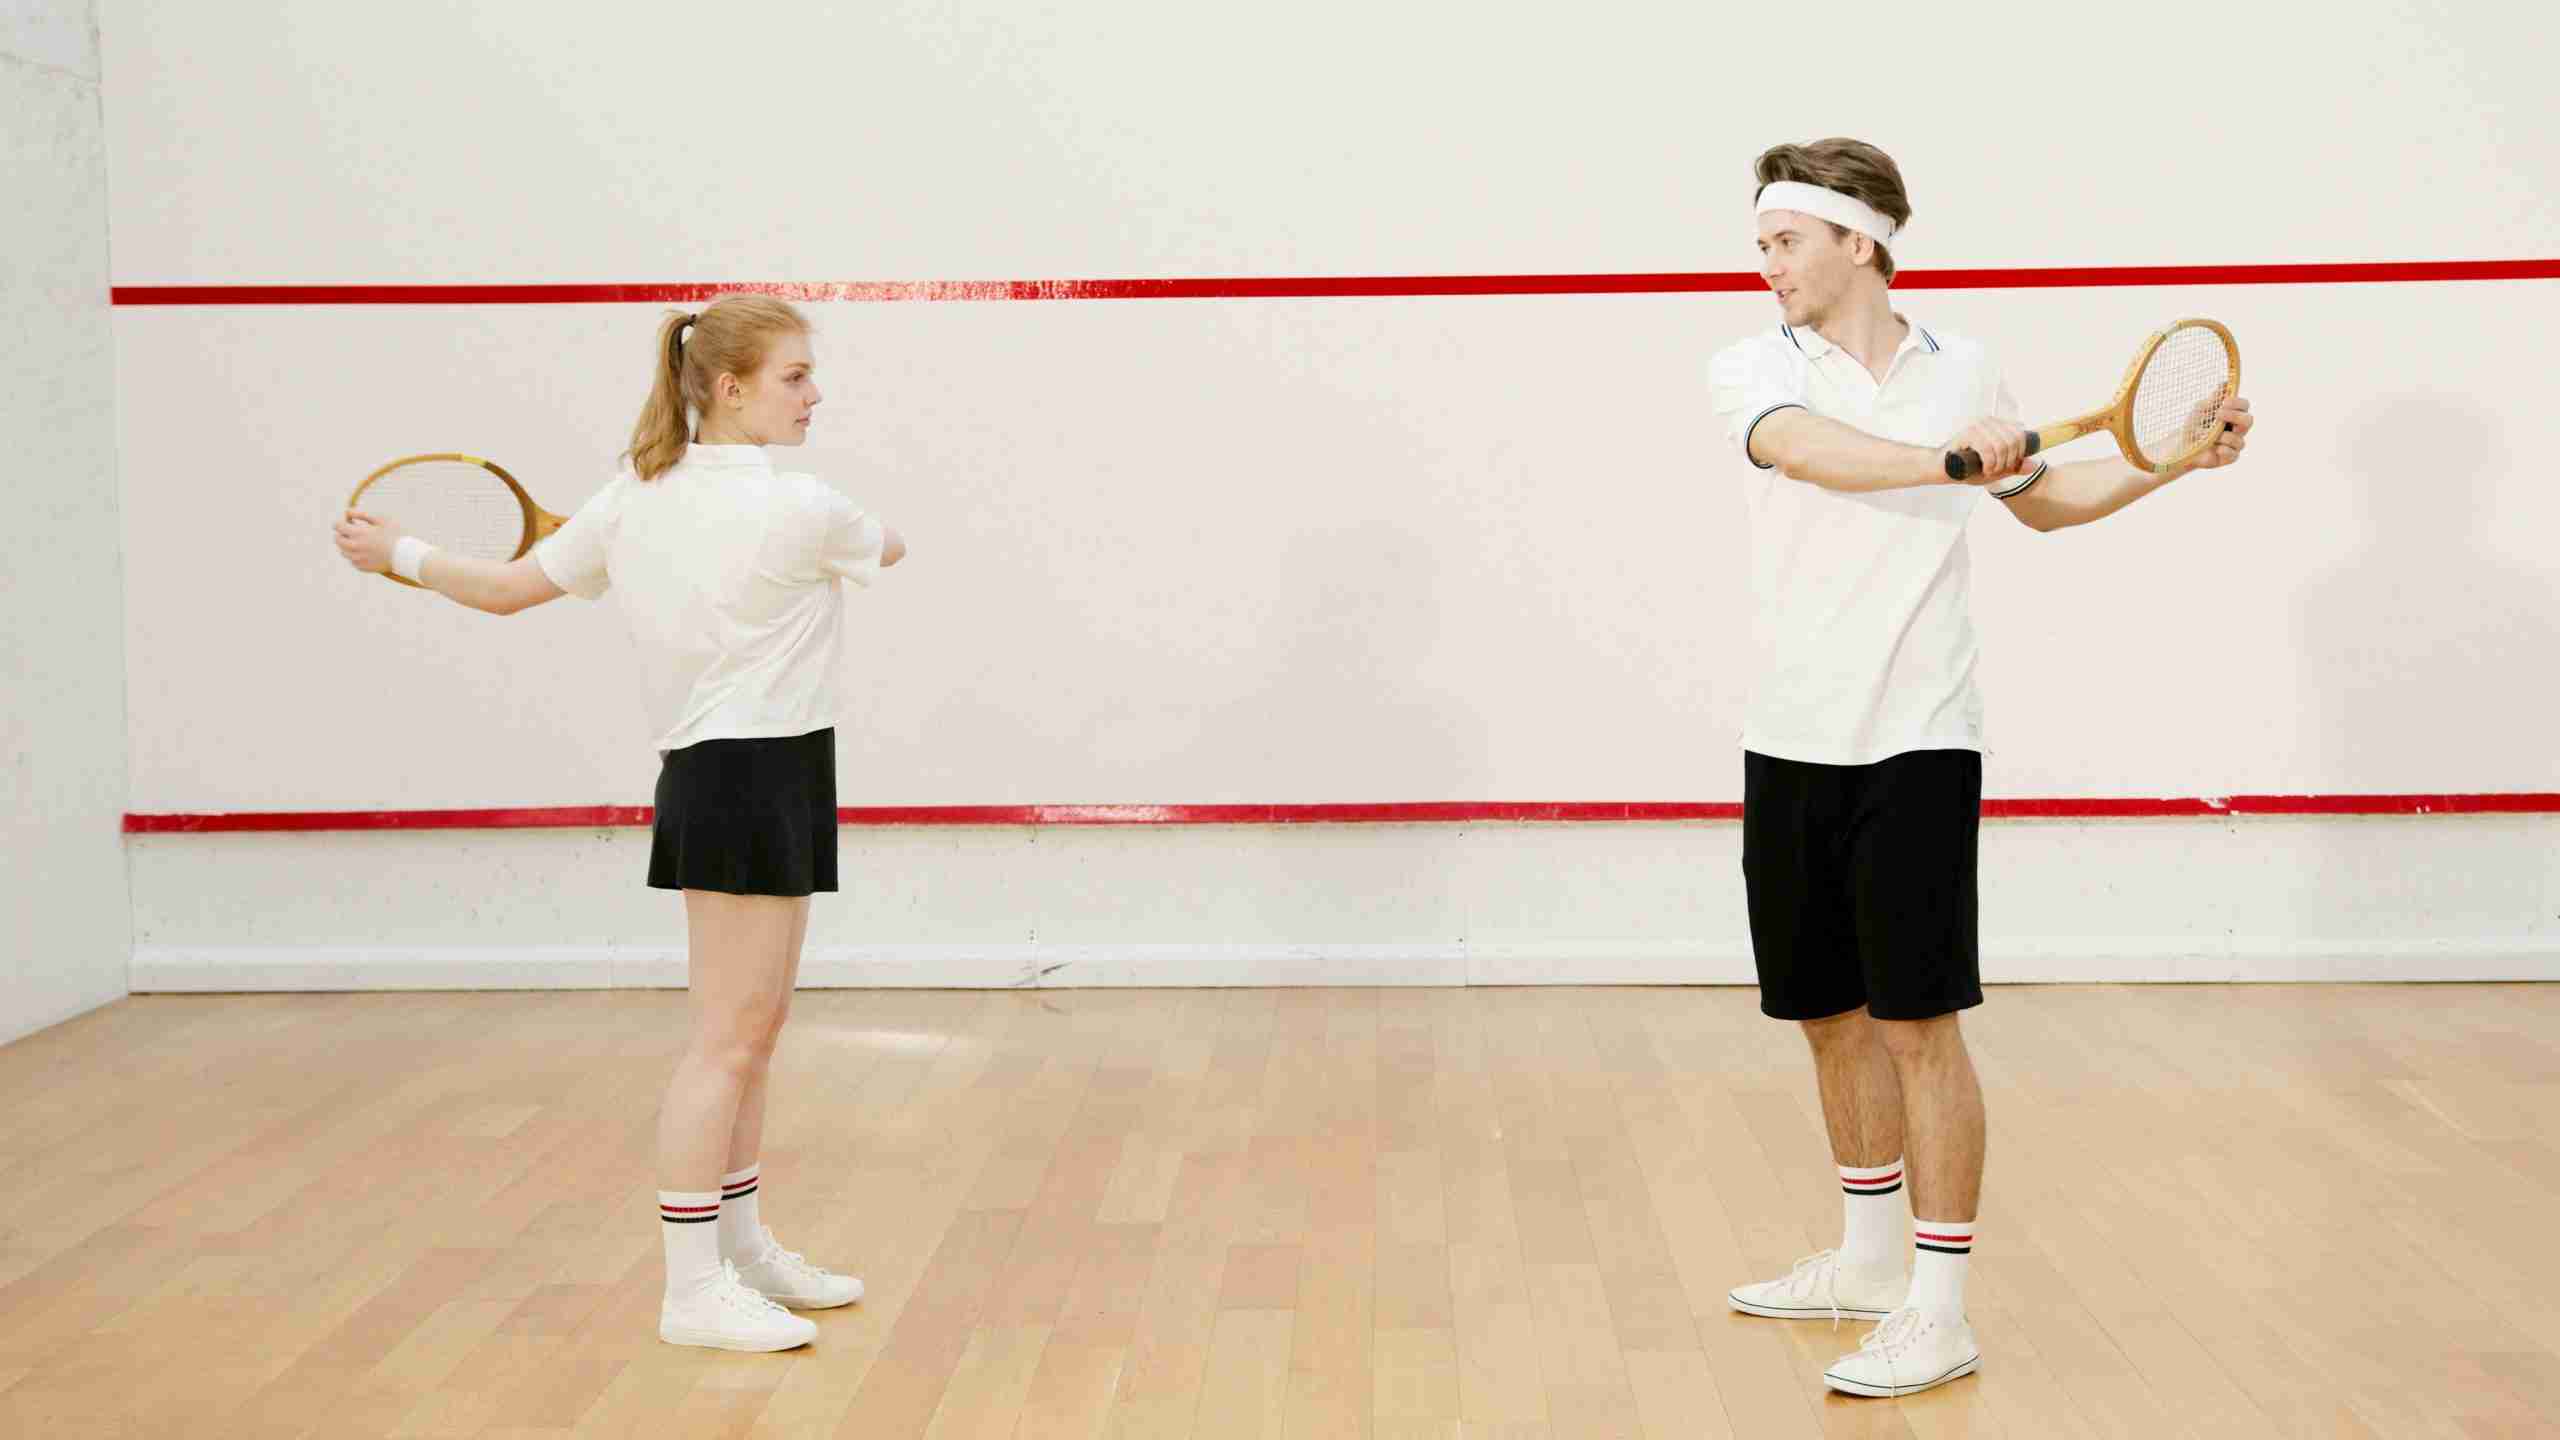 koppel warmt zich op voor het spelen van squash sport en schoonheid before-night-falls.com blog